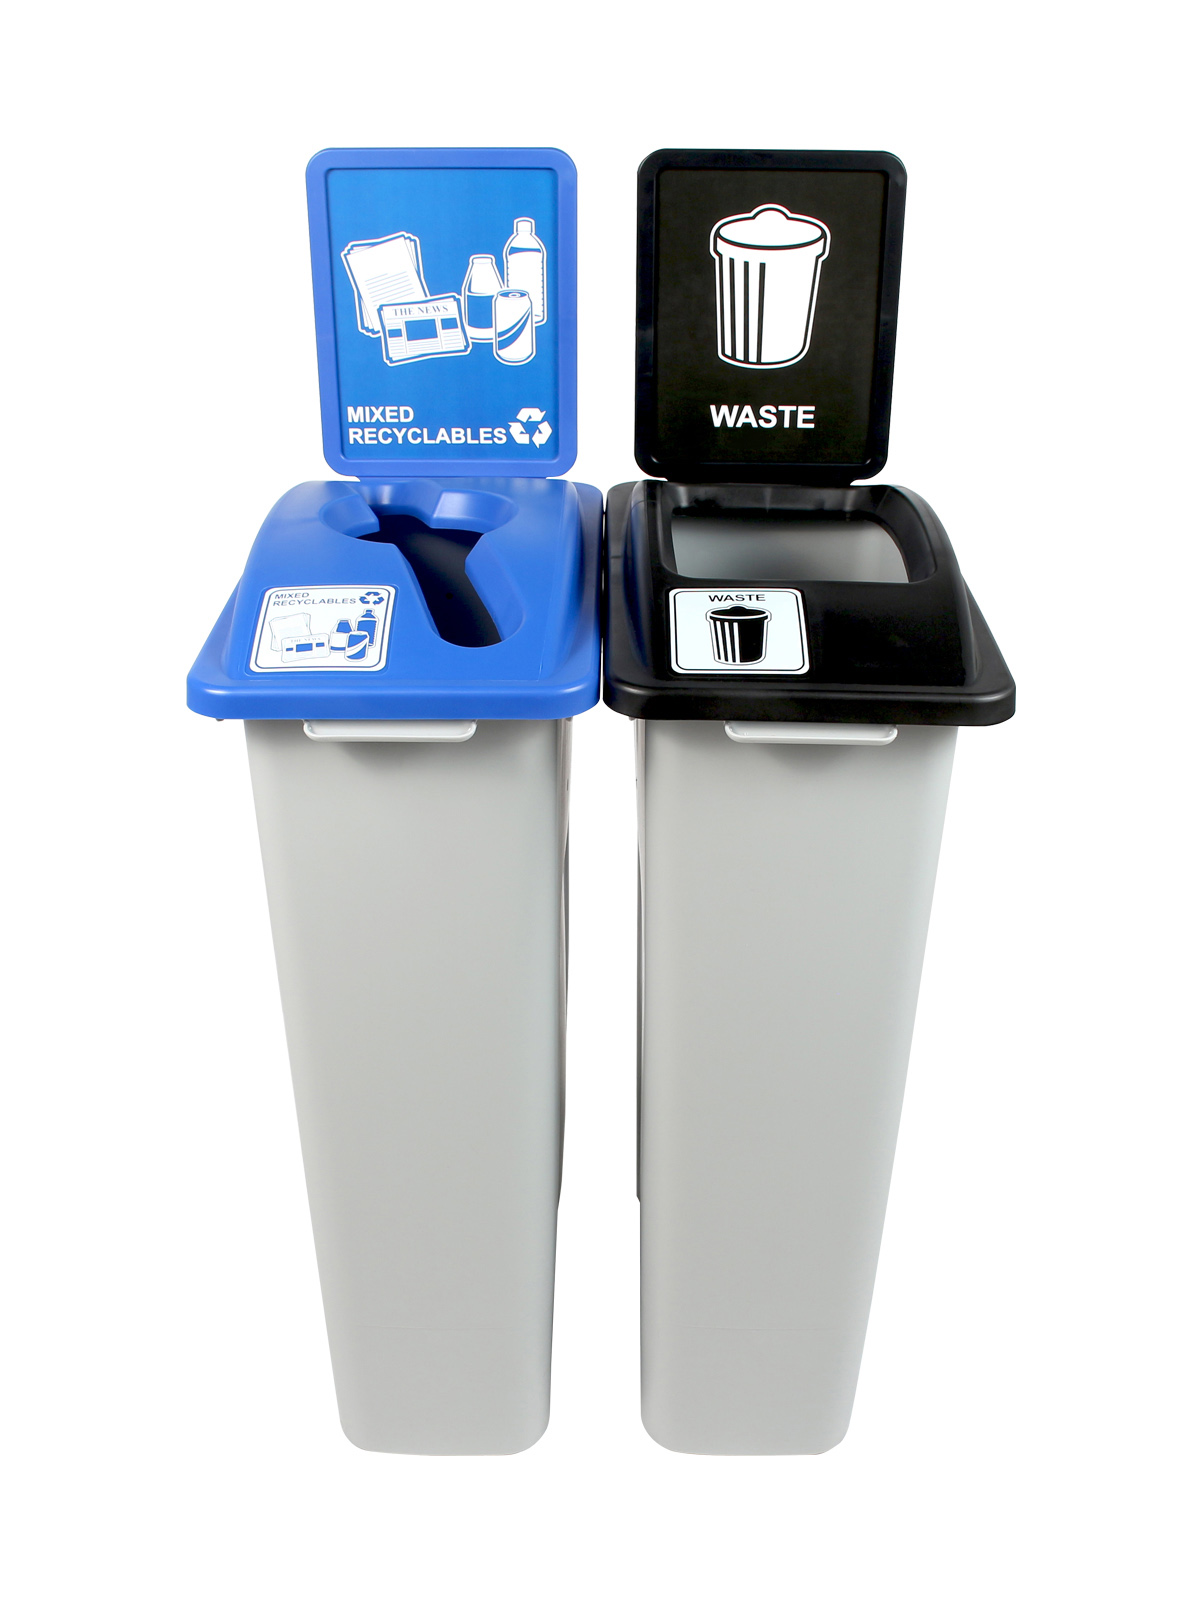 废物观察者-双-缅因州兼容-混合可回收-废物-混合全-灰-蓝-黑标题=